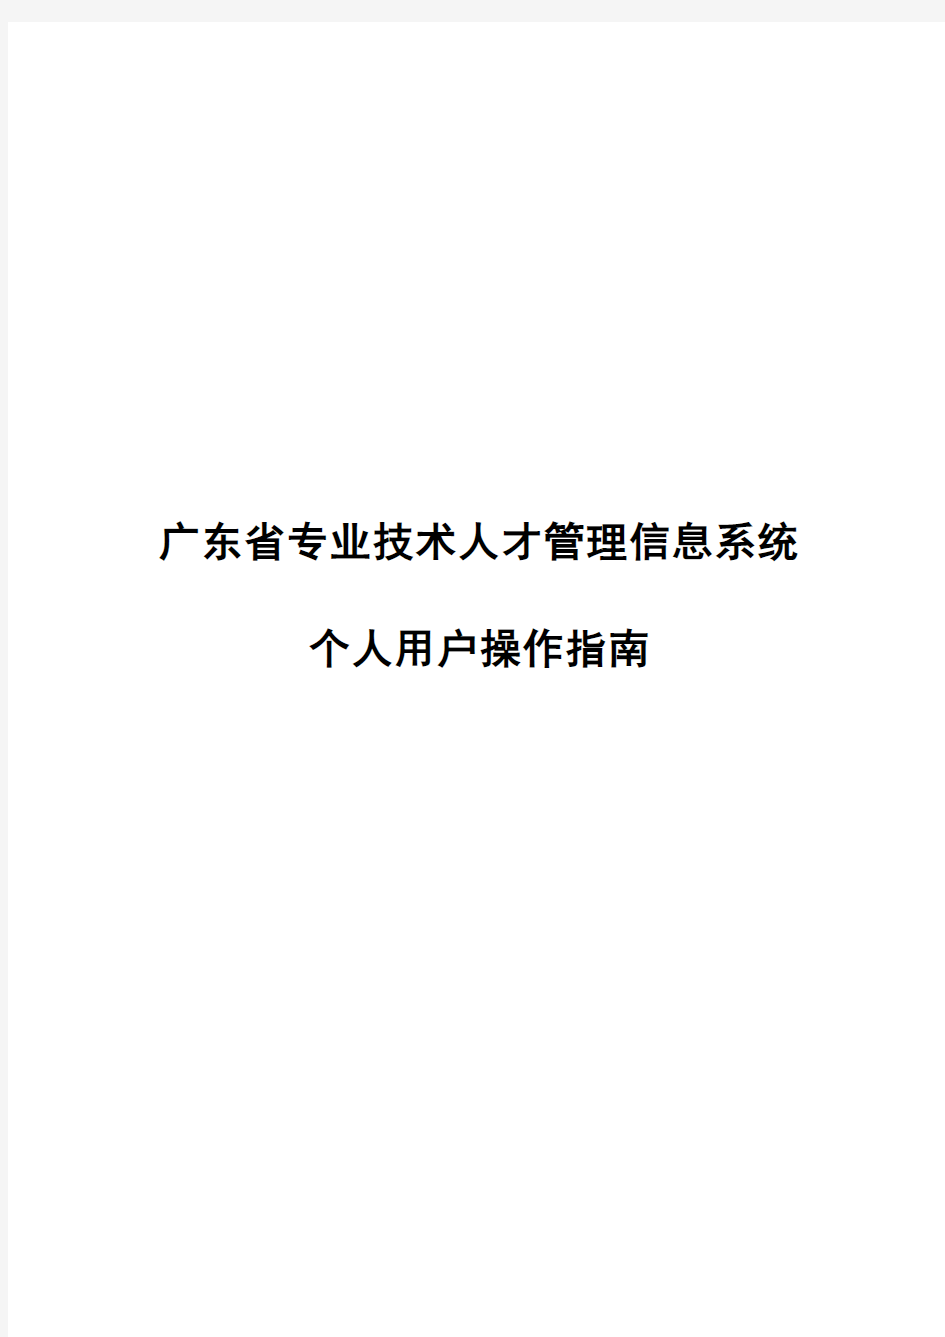 2016年广东省职称评审申报系统-个人操作指引